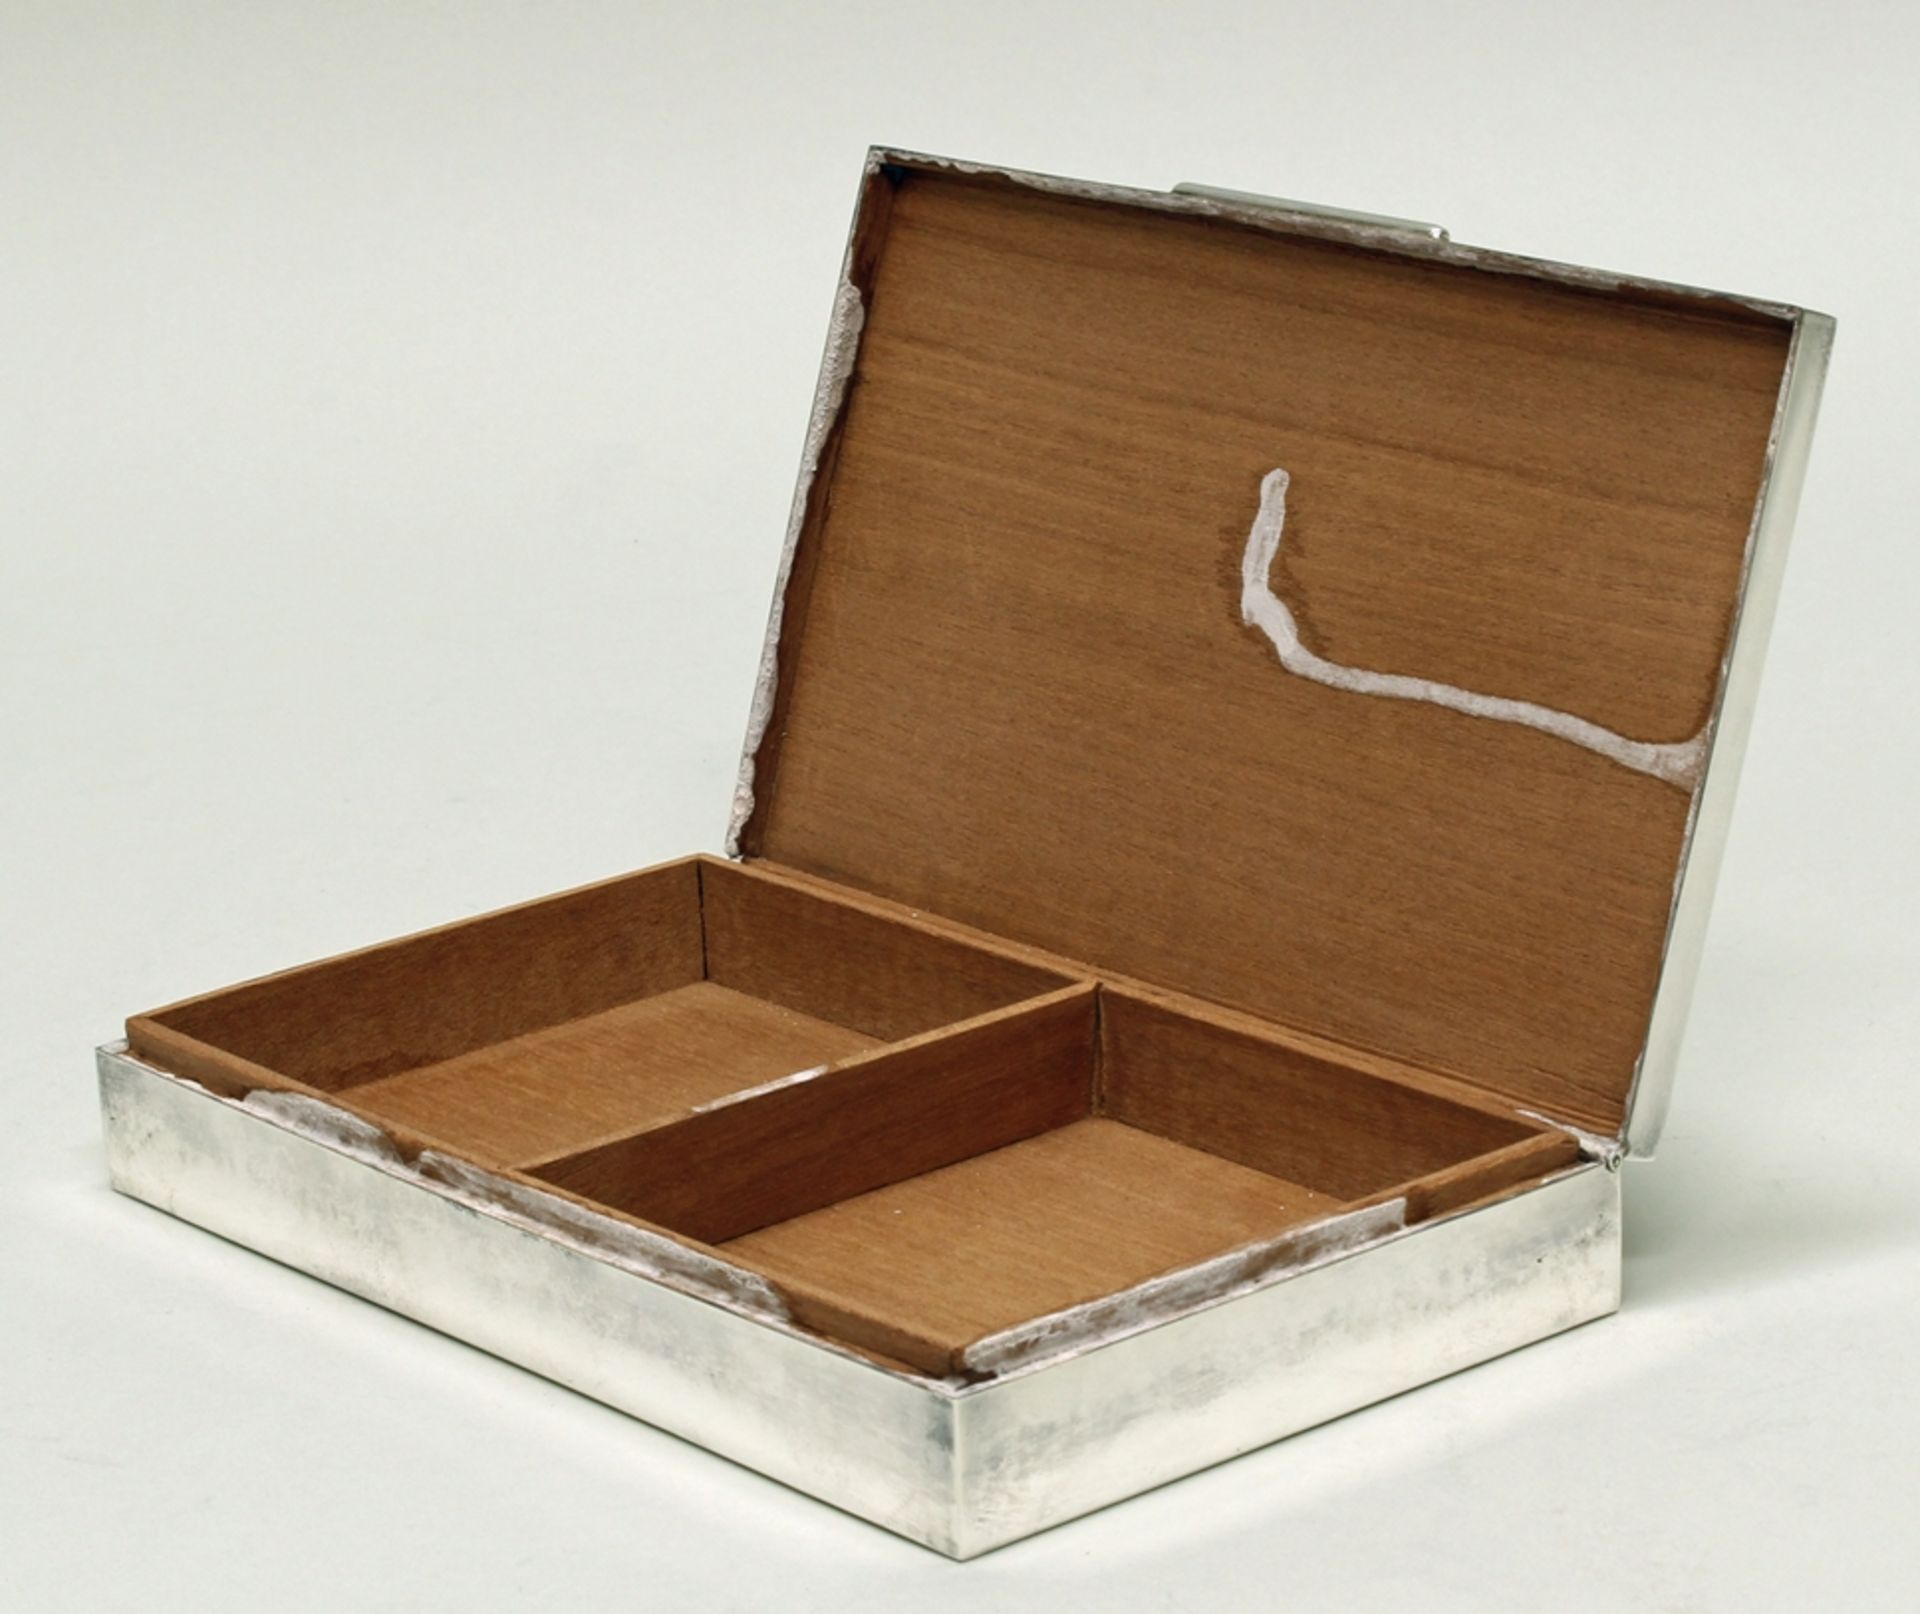 Zigarettendose, "Berlin", Silber 925, Wilhelm Binder, Deckel mit Stadtwappen, innen Holz, Boden ges - Bild 3 aus 3